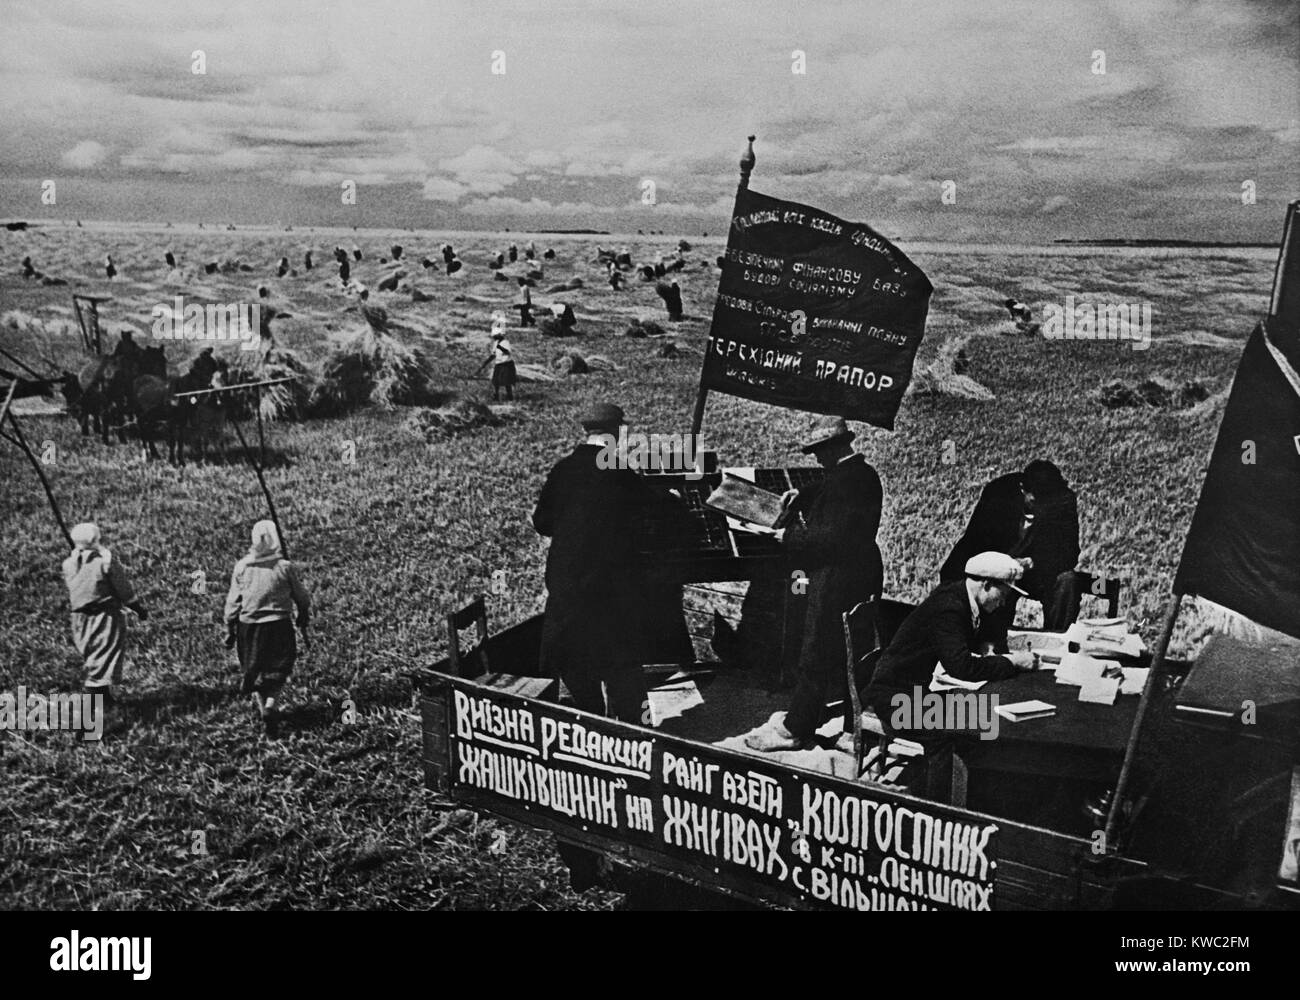 Einstellung der Bezirk Zeitung, "Kollektive Landwirt" auf dem Gebiet der sowjetischen Bauernhof. Ca. 1935-40. In der Nähe von Kiew, Ukraine, UdSSR. (BSLOC 2015 2 253) Stockfoto